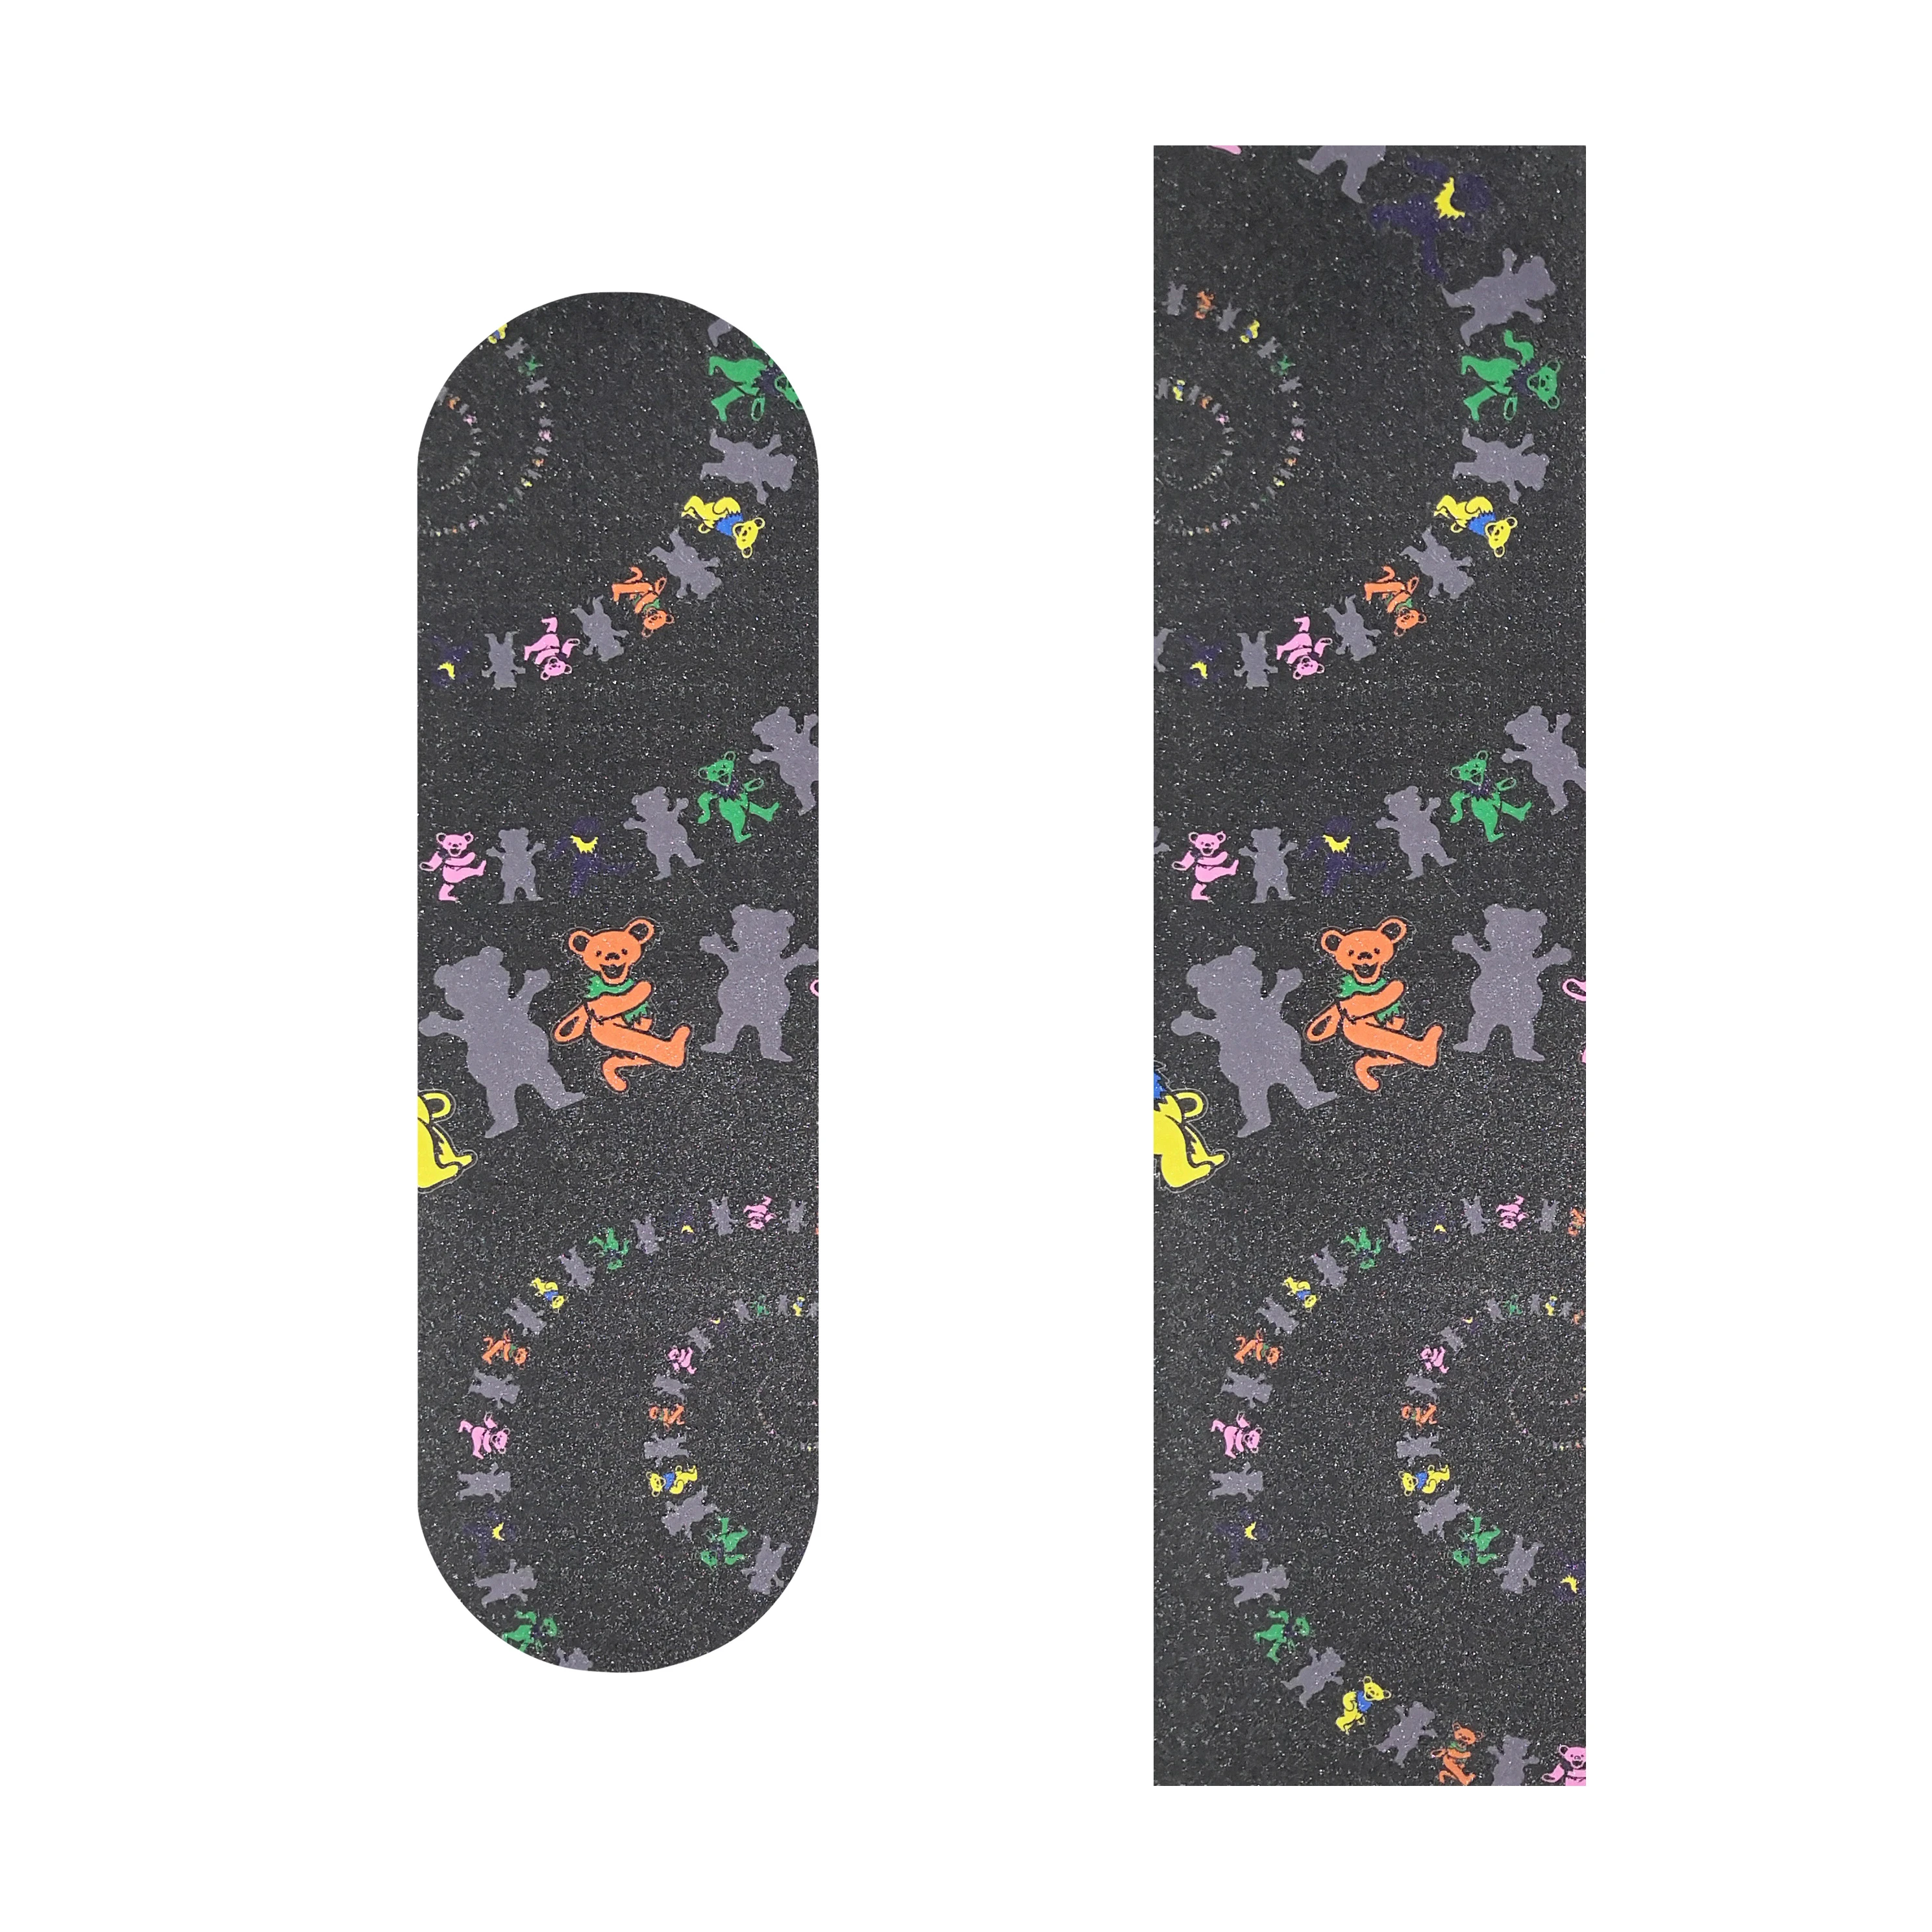 Wholesale OS780 Custom Grip Tape Durable Waterproof Scooter Grip Tape OEM Design Printing Grip Tape Skateboard